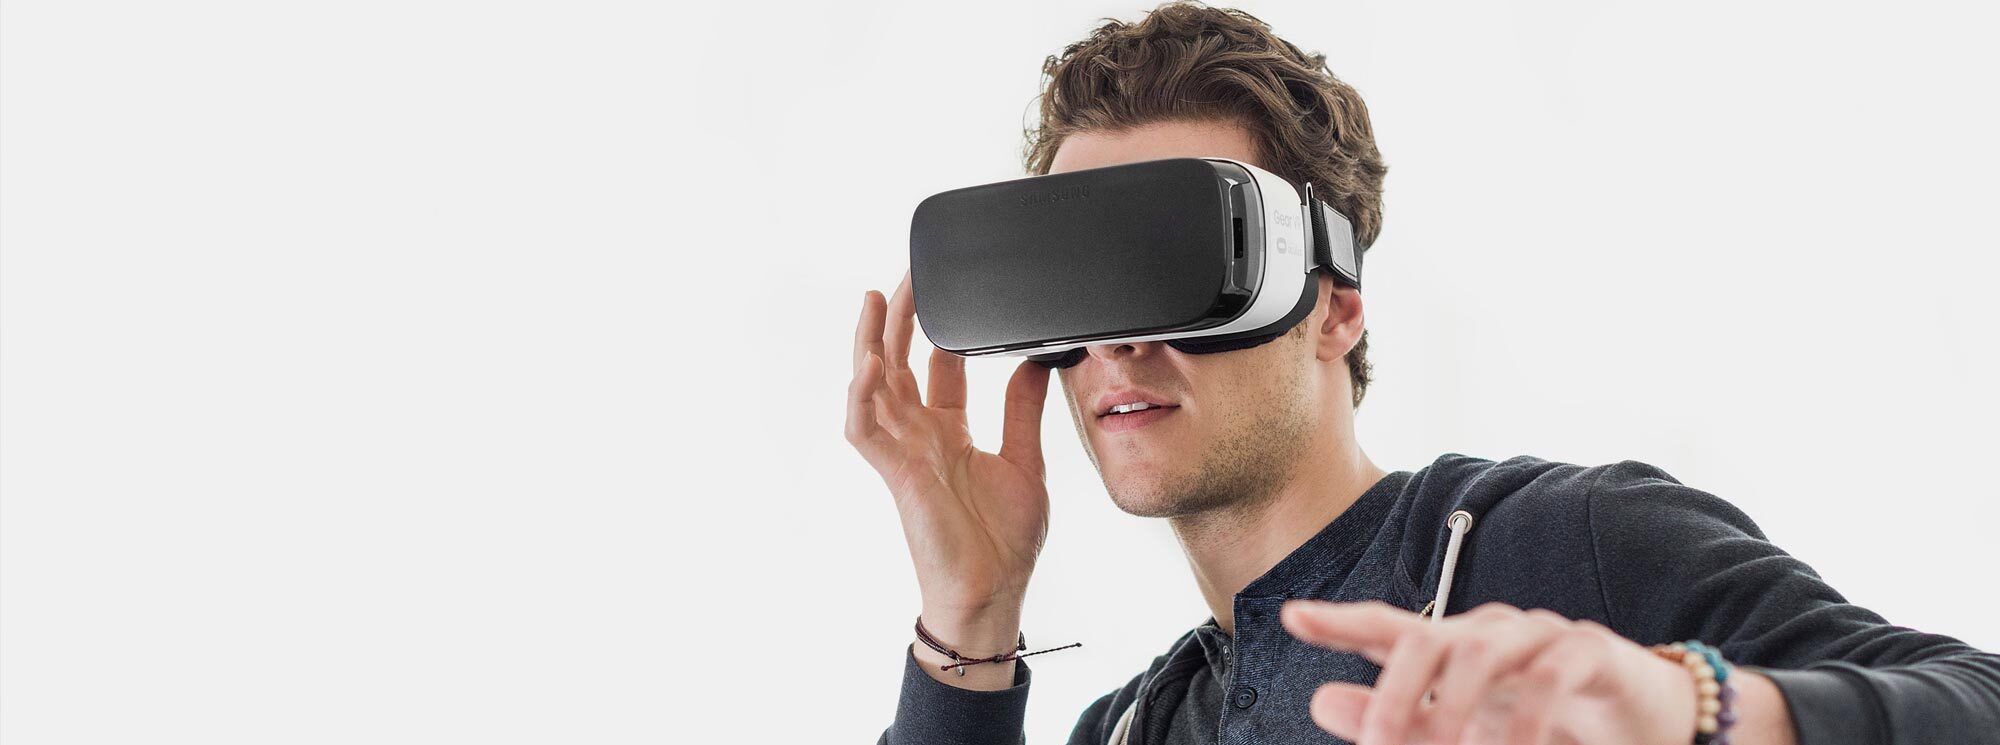 Vr лагает. VR фотосъемка. VR режим. Видео очки высокого разрешения. VR-тур для журналистов.